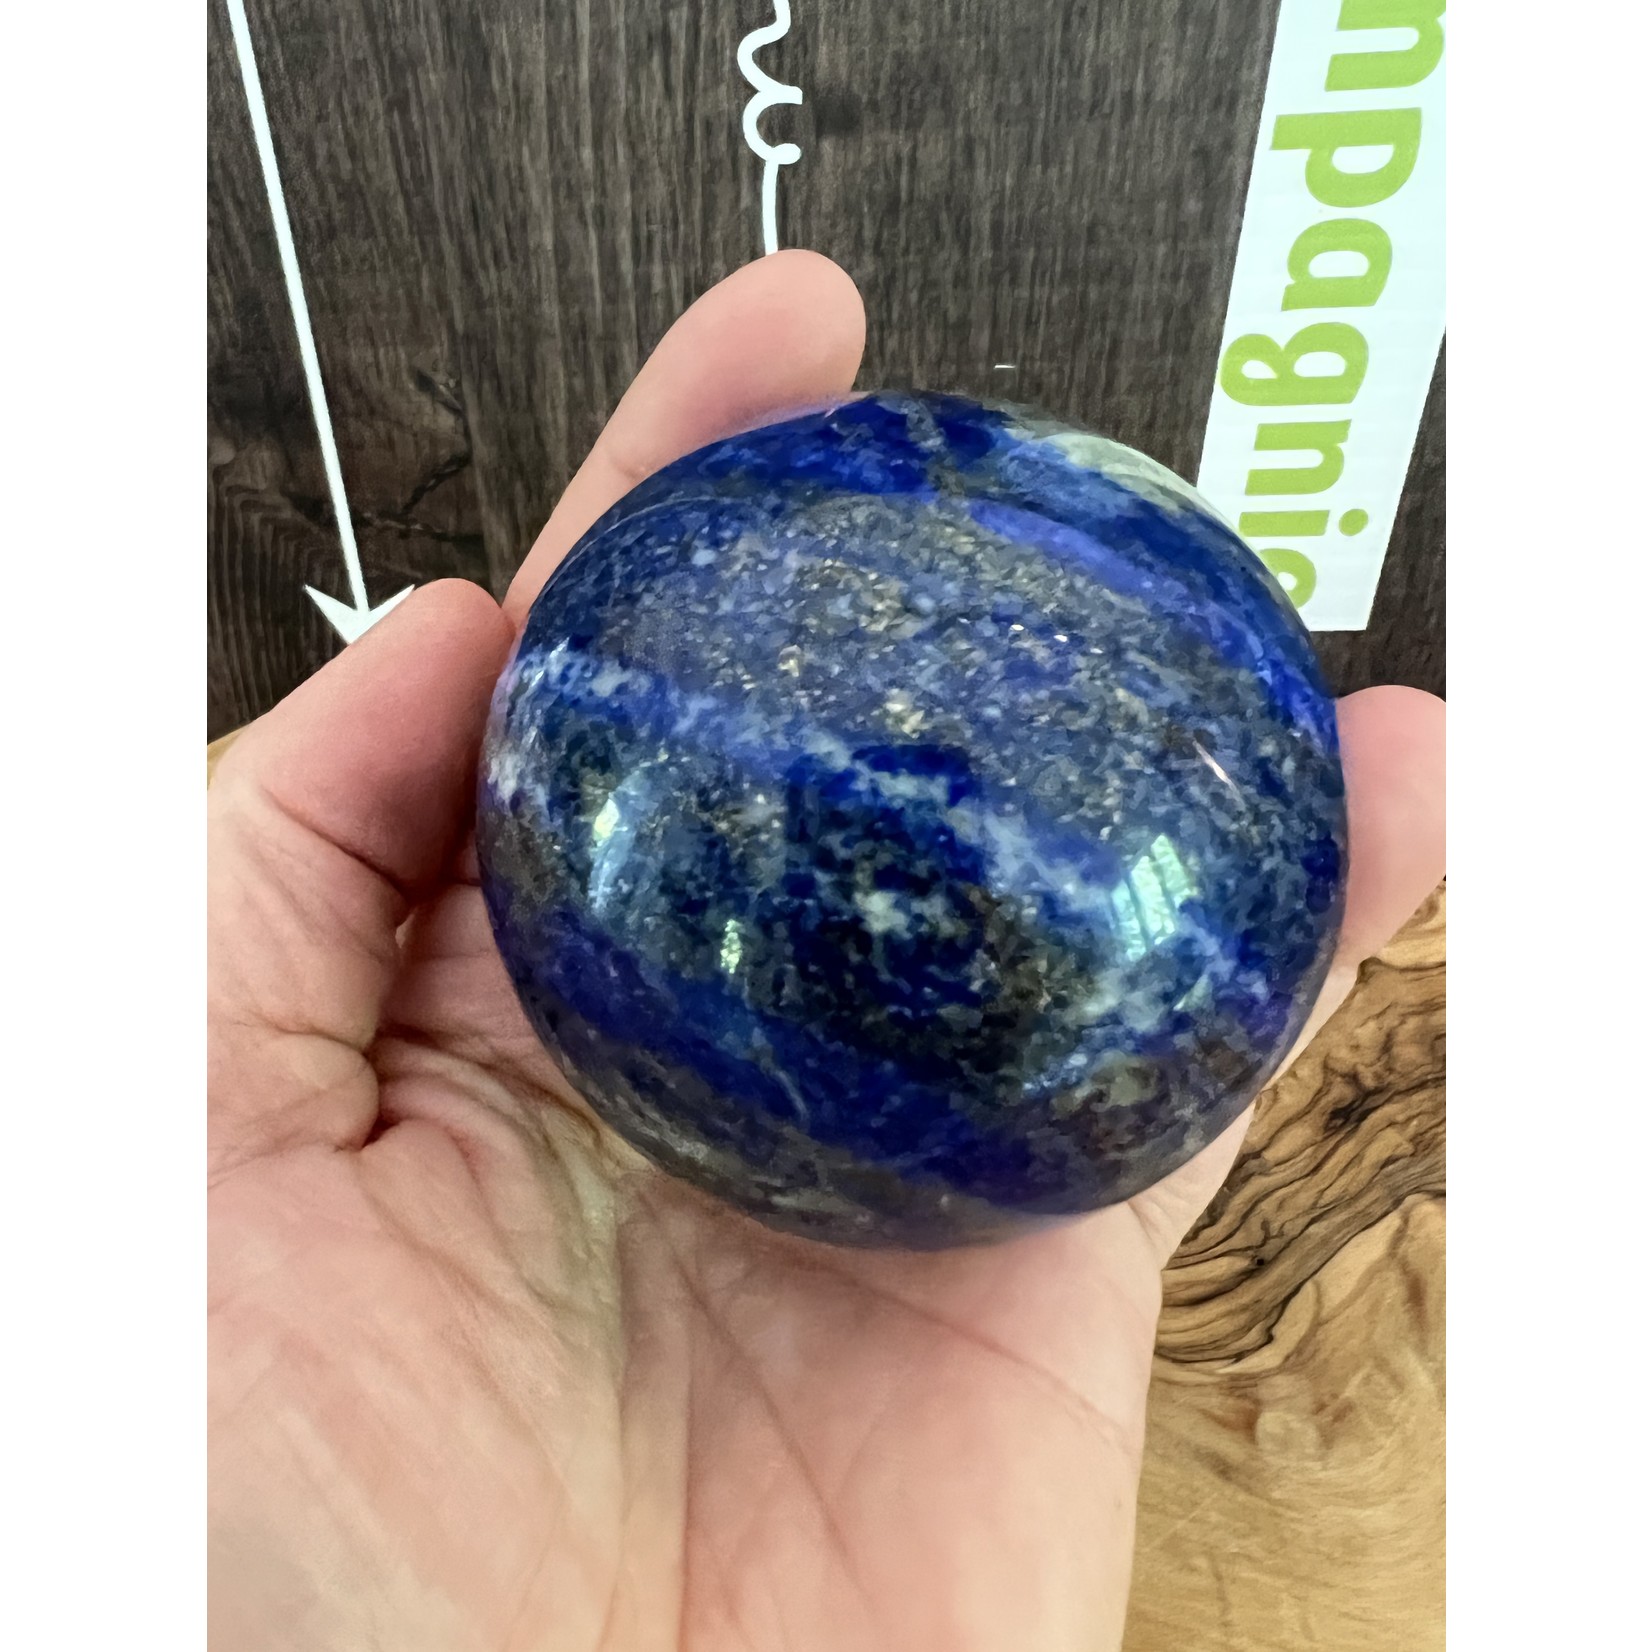 large sphère de lapis lazuli bleu prononcé, soulage les angoisses et élimine la nervosité, reconnue pour apaiser les migraines